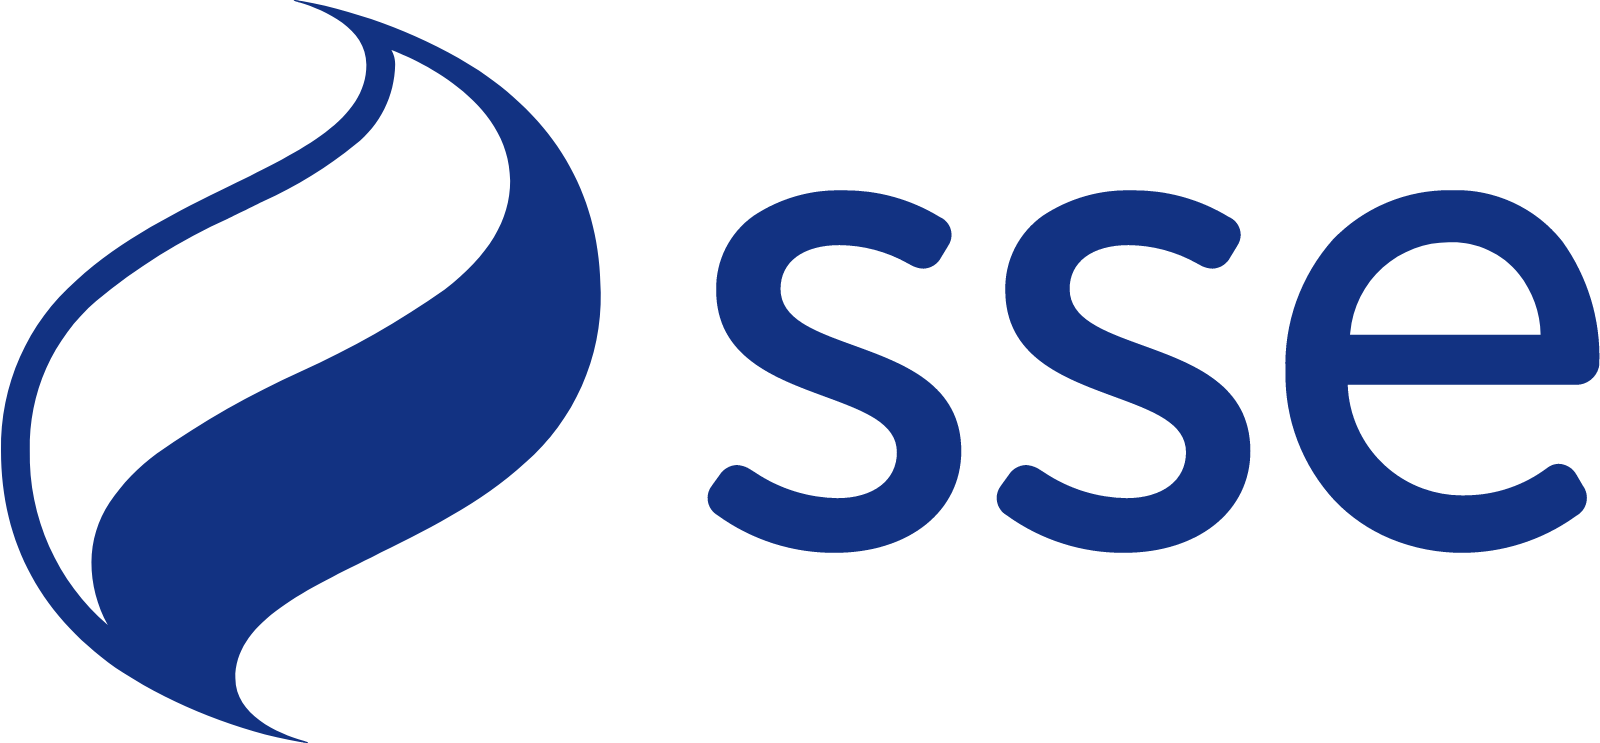 SSE logo large (transparent PNG)